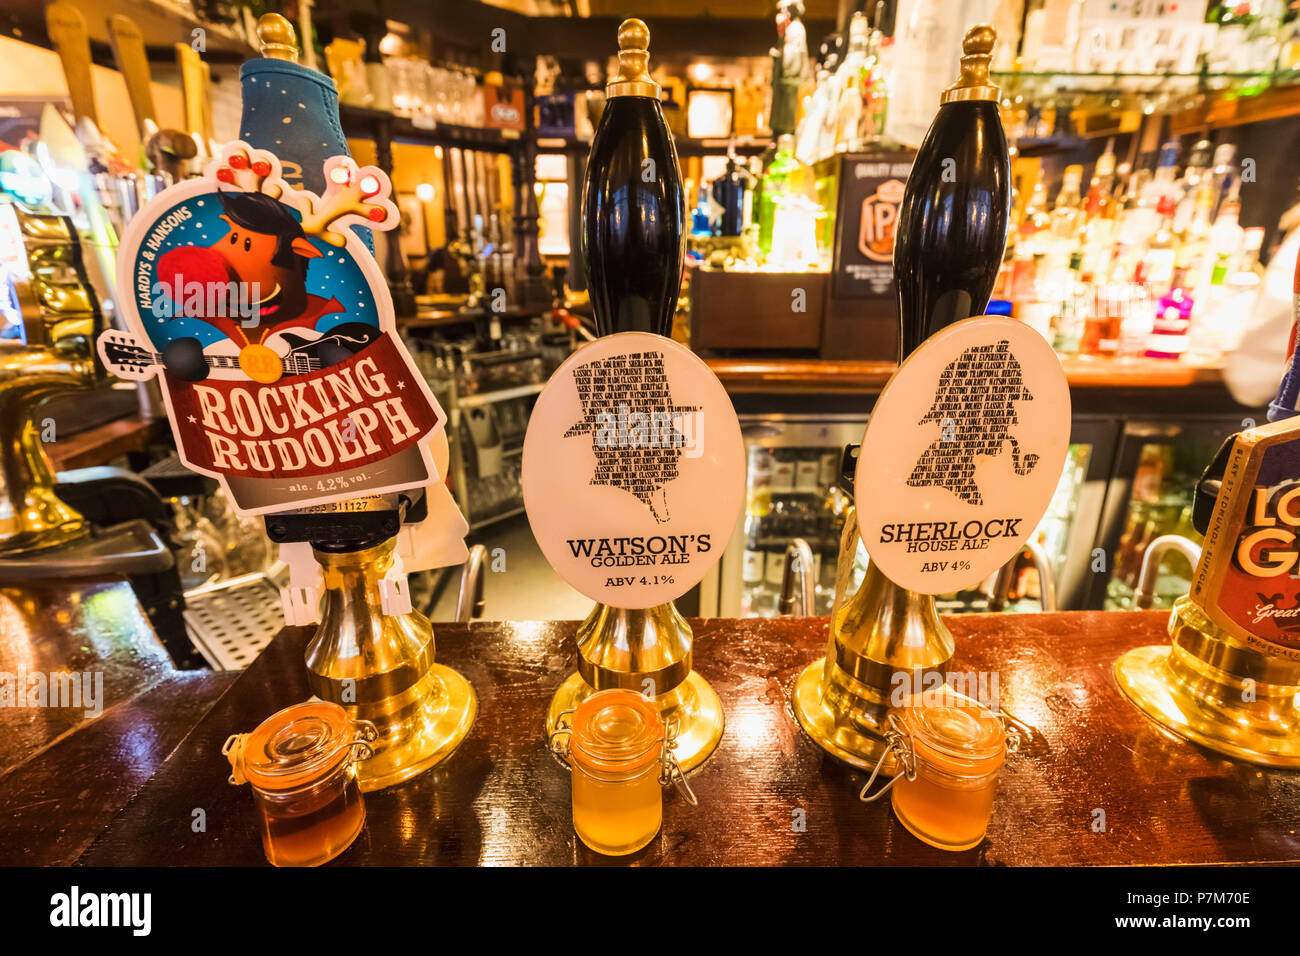 England, London, Damm, die Sherlock Holmes Pub, Bier Pumpe Griffe mit Sherlock Haus Ale und Watson's Golden Ale Stockfoto